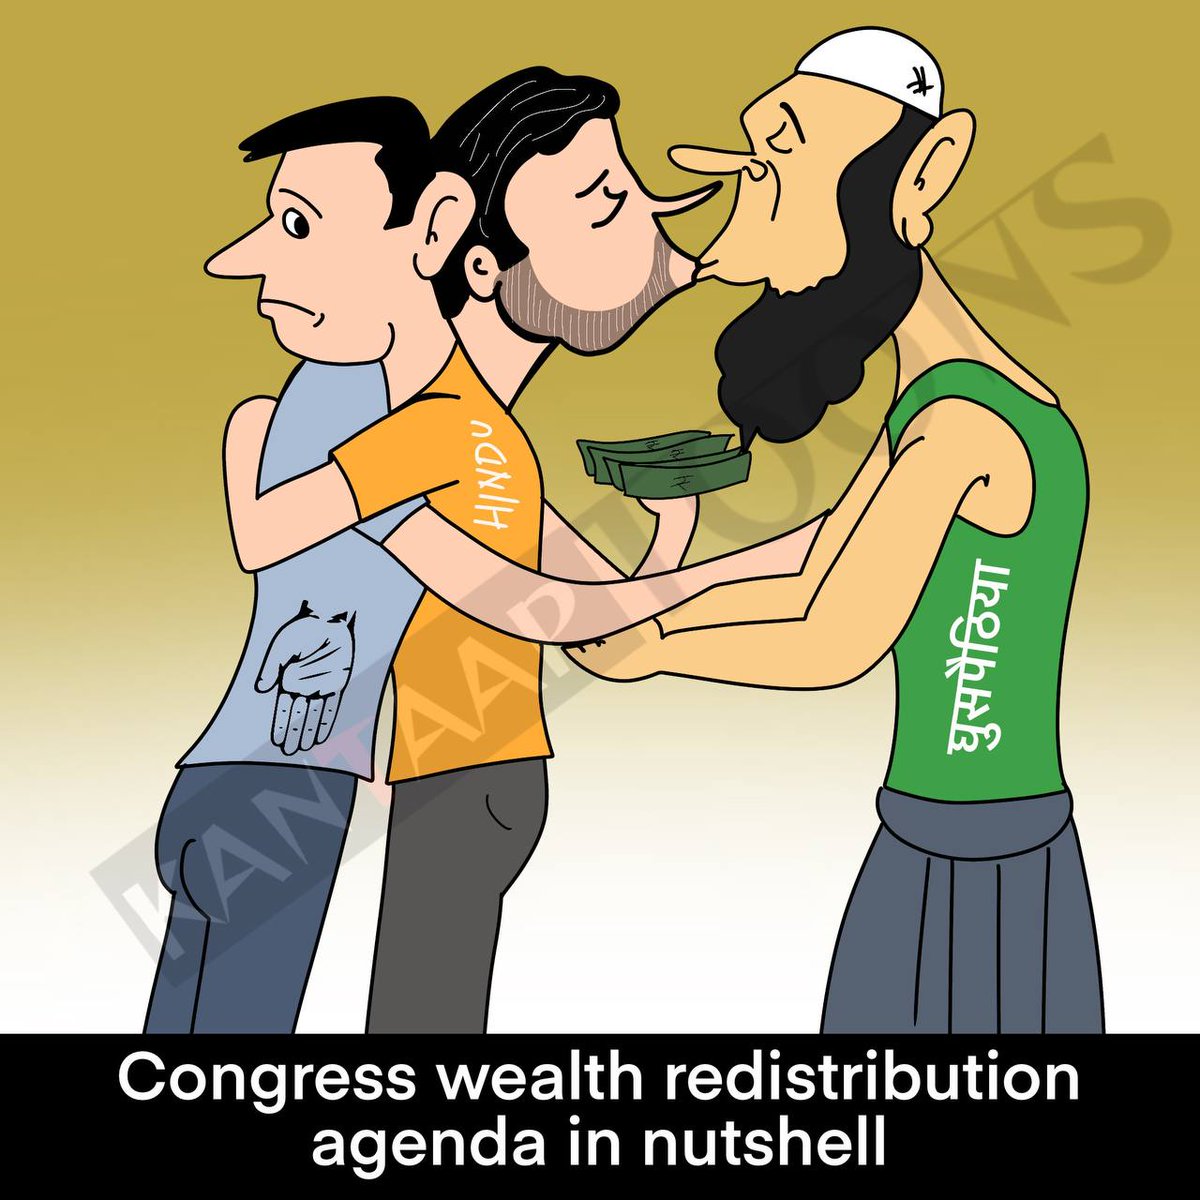 Congress manifesto in nutshell #inheritance